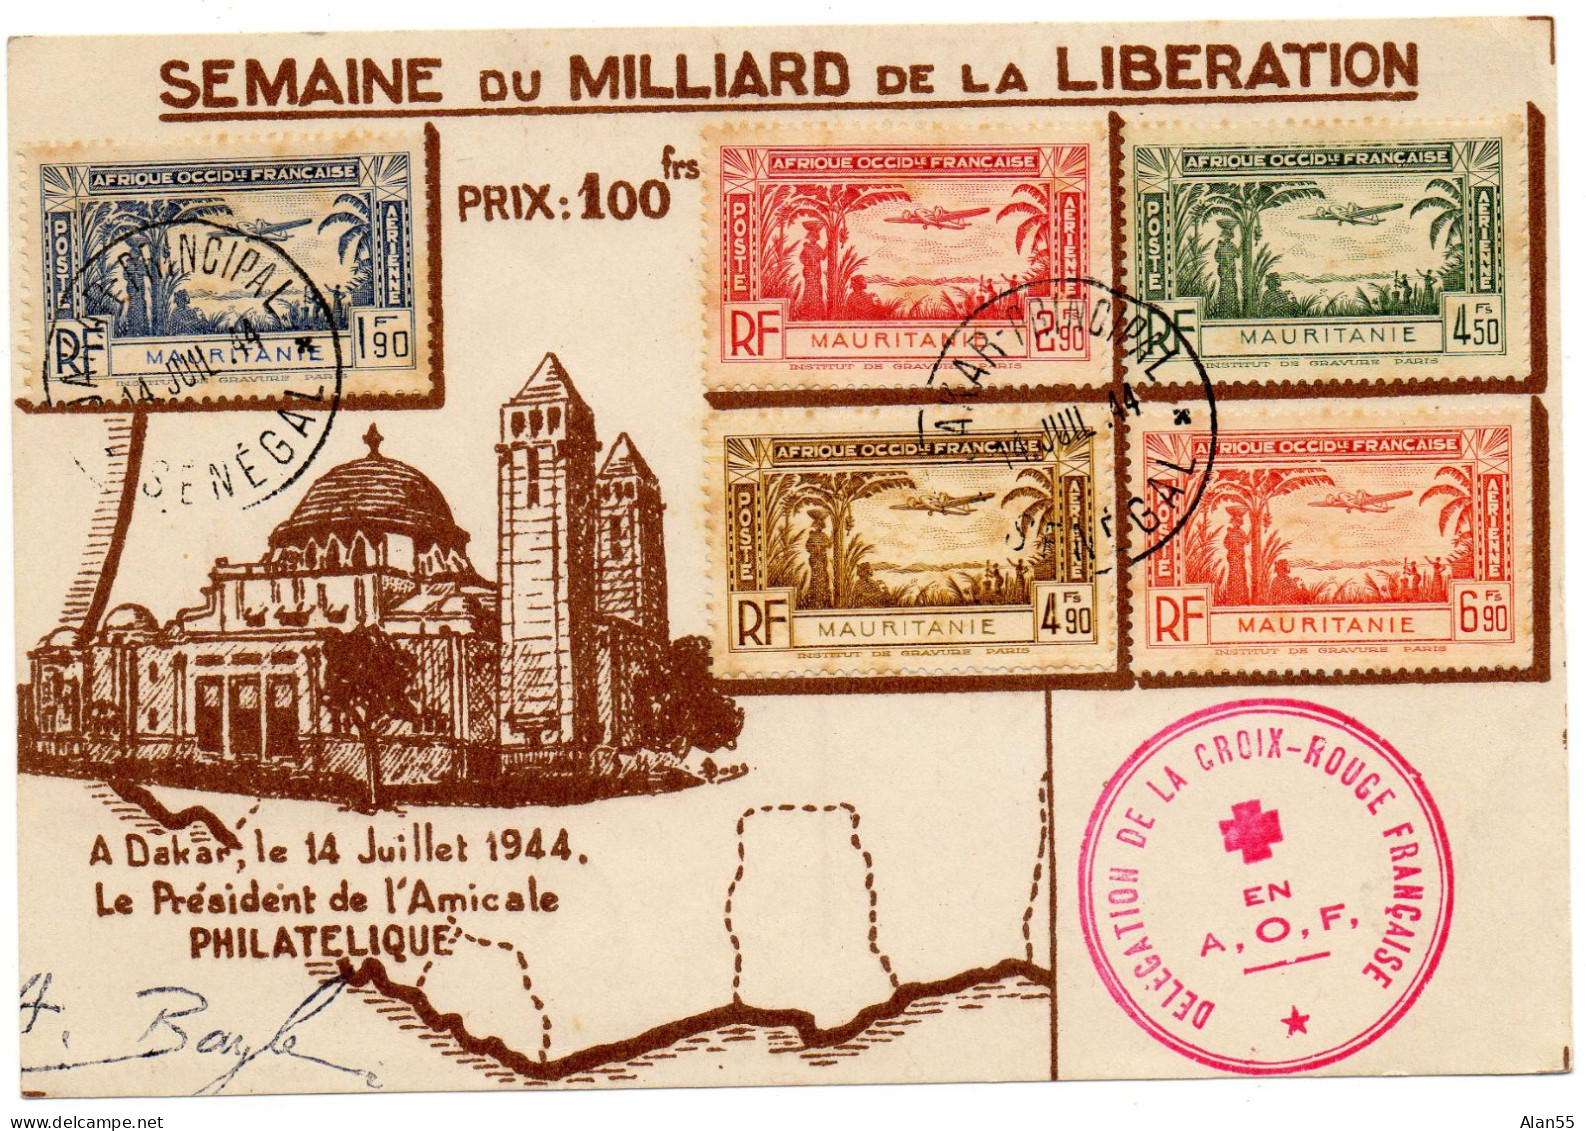 MAURITANIE.1944. LETTRE "DELEGATION CROIX-ROUGE FRANCAISE-A.O.F". - Croix-Rouge